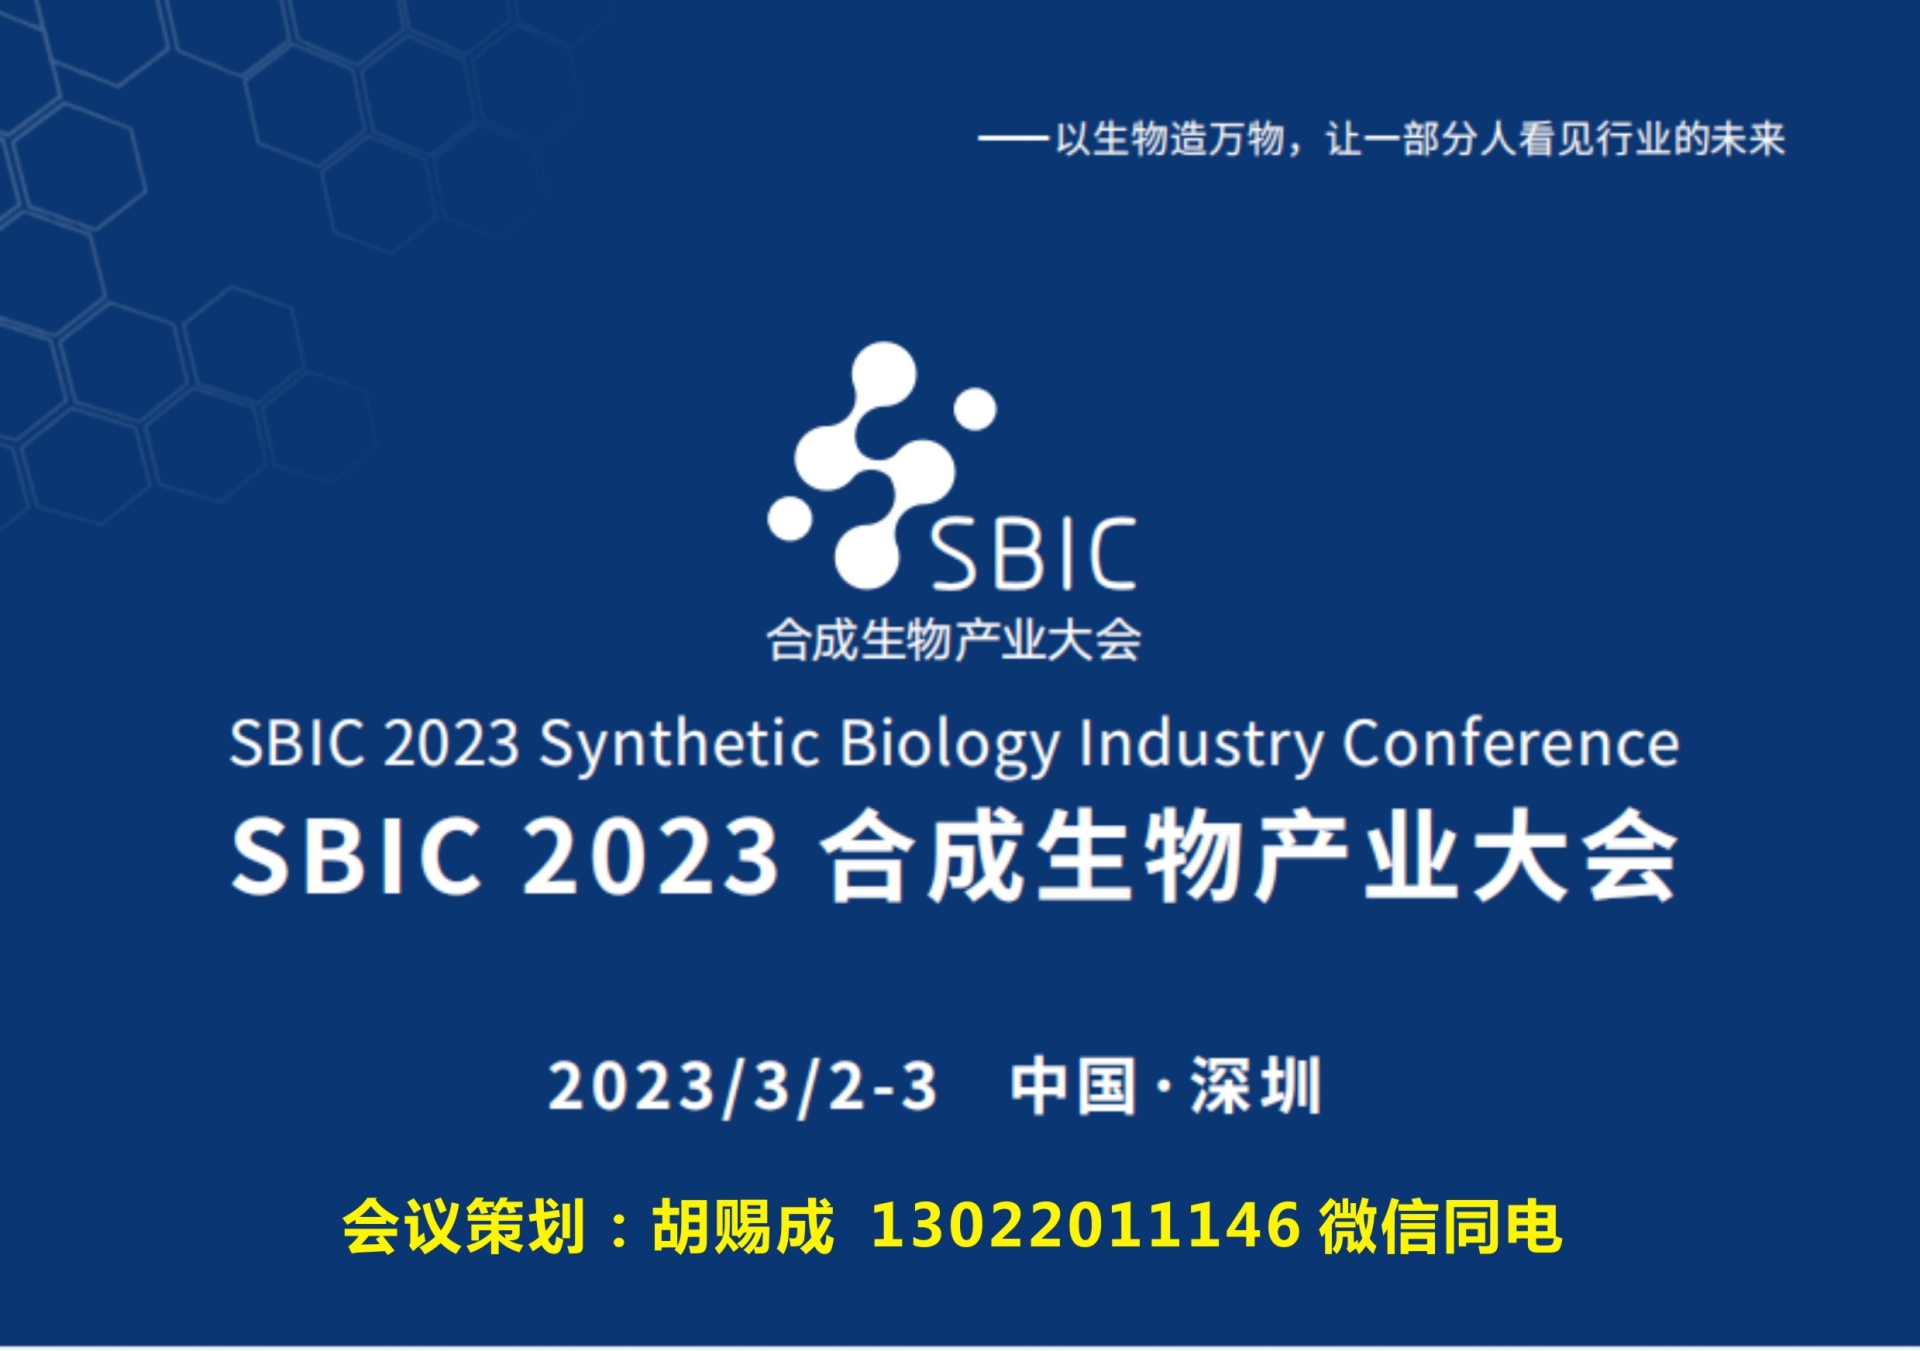 会议邀请|2023SBIC合成生物产业大会